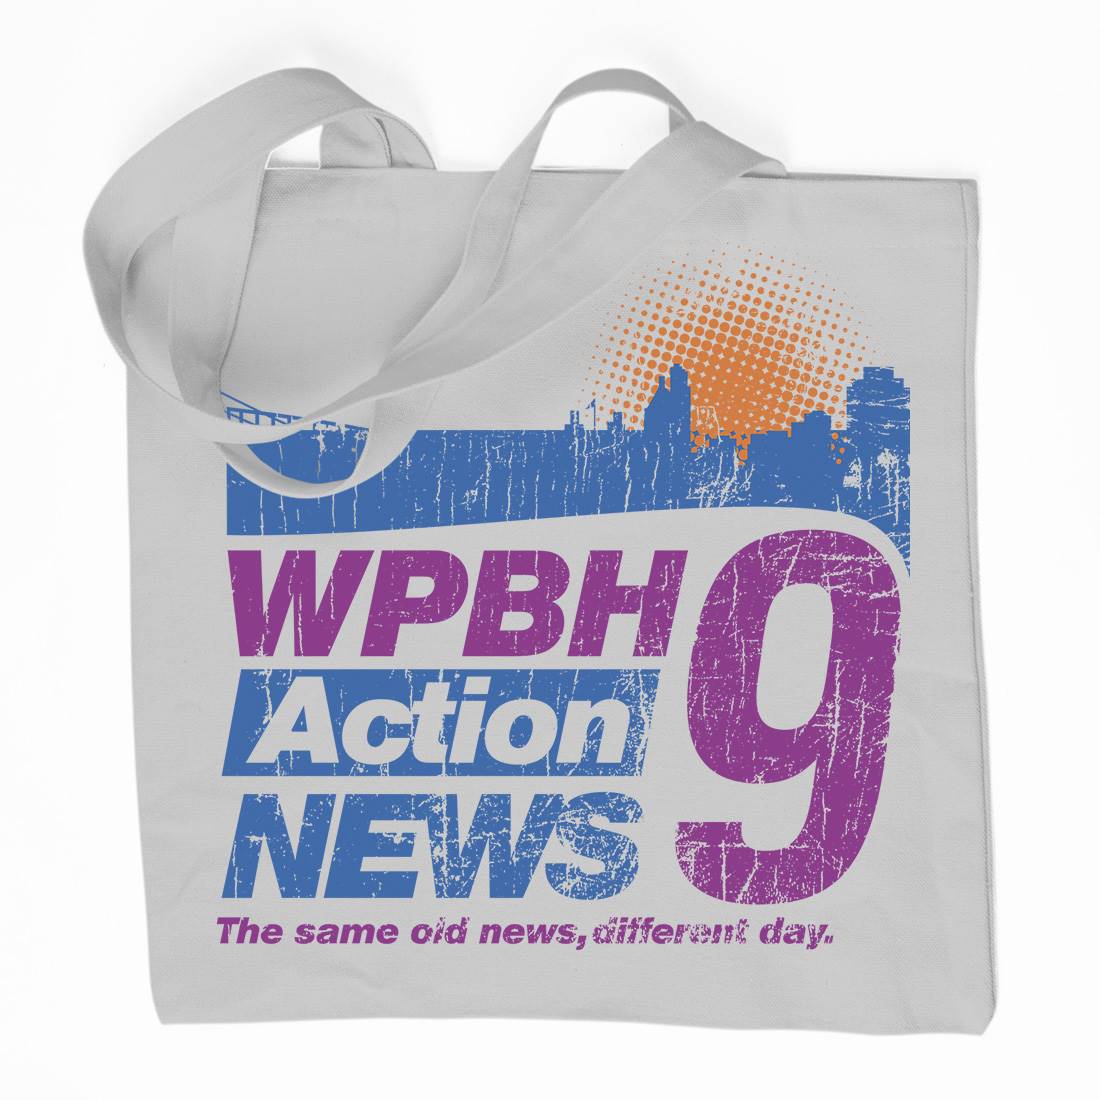 Wpbh Action Organic Premium Cotton Tote Bag Retro D342